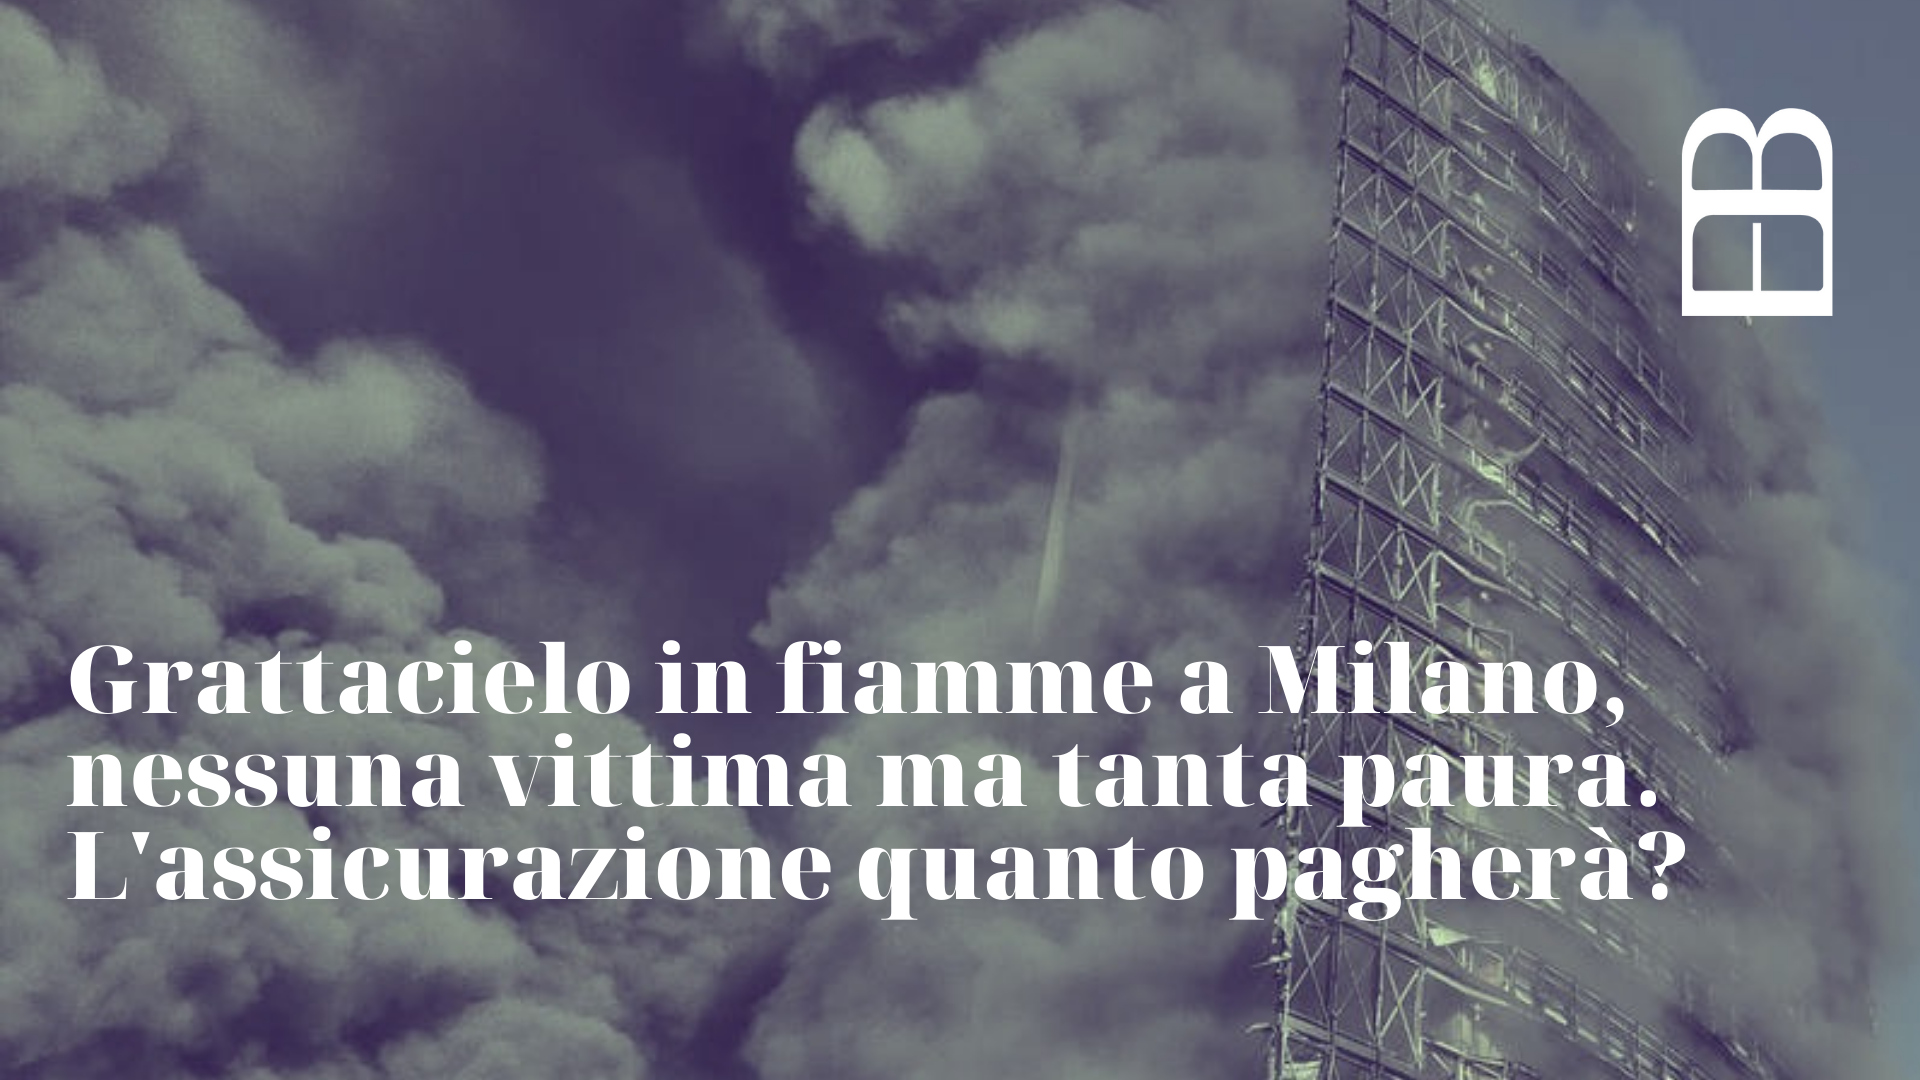 grattacielo in fiamme a milano. quanto pagherà l'assicurazione?